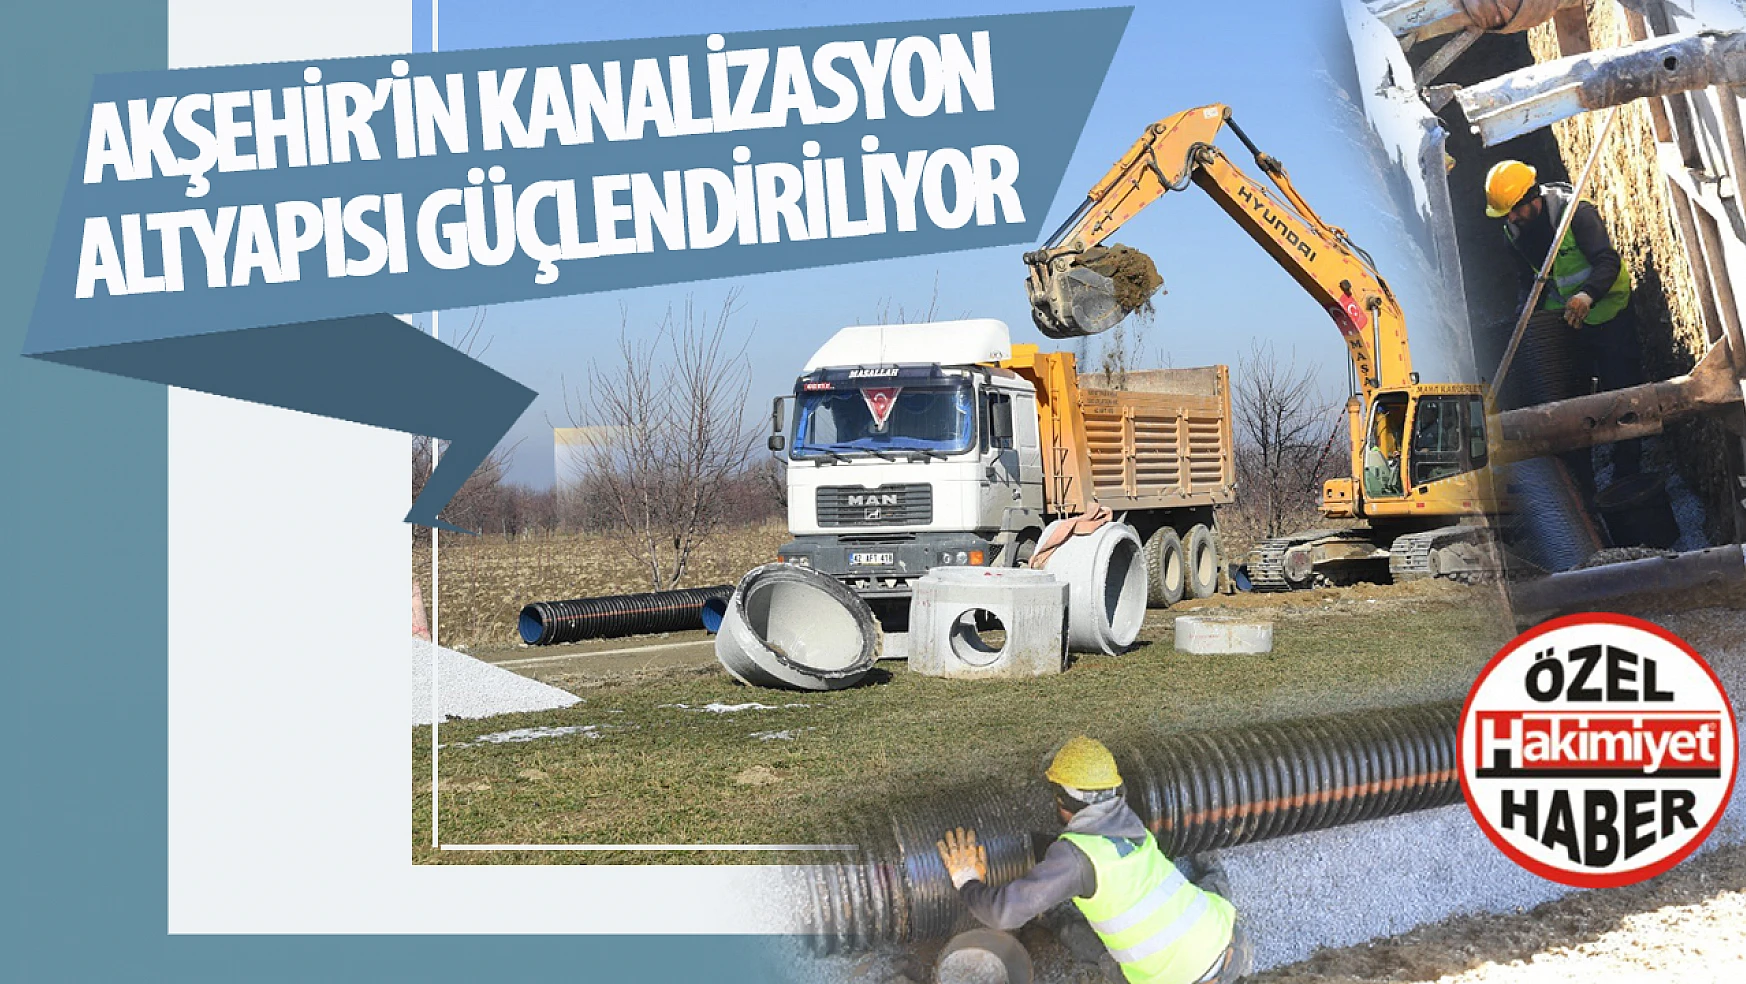 Konya Büyükşehir Belediyesi KOSKİ, Akşehir'de Kanalizasyon Alt Yapısını Güçlendiriyor